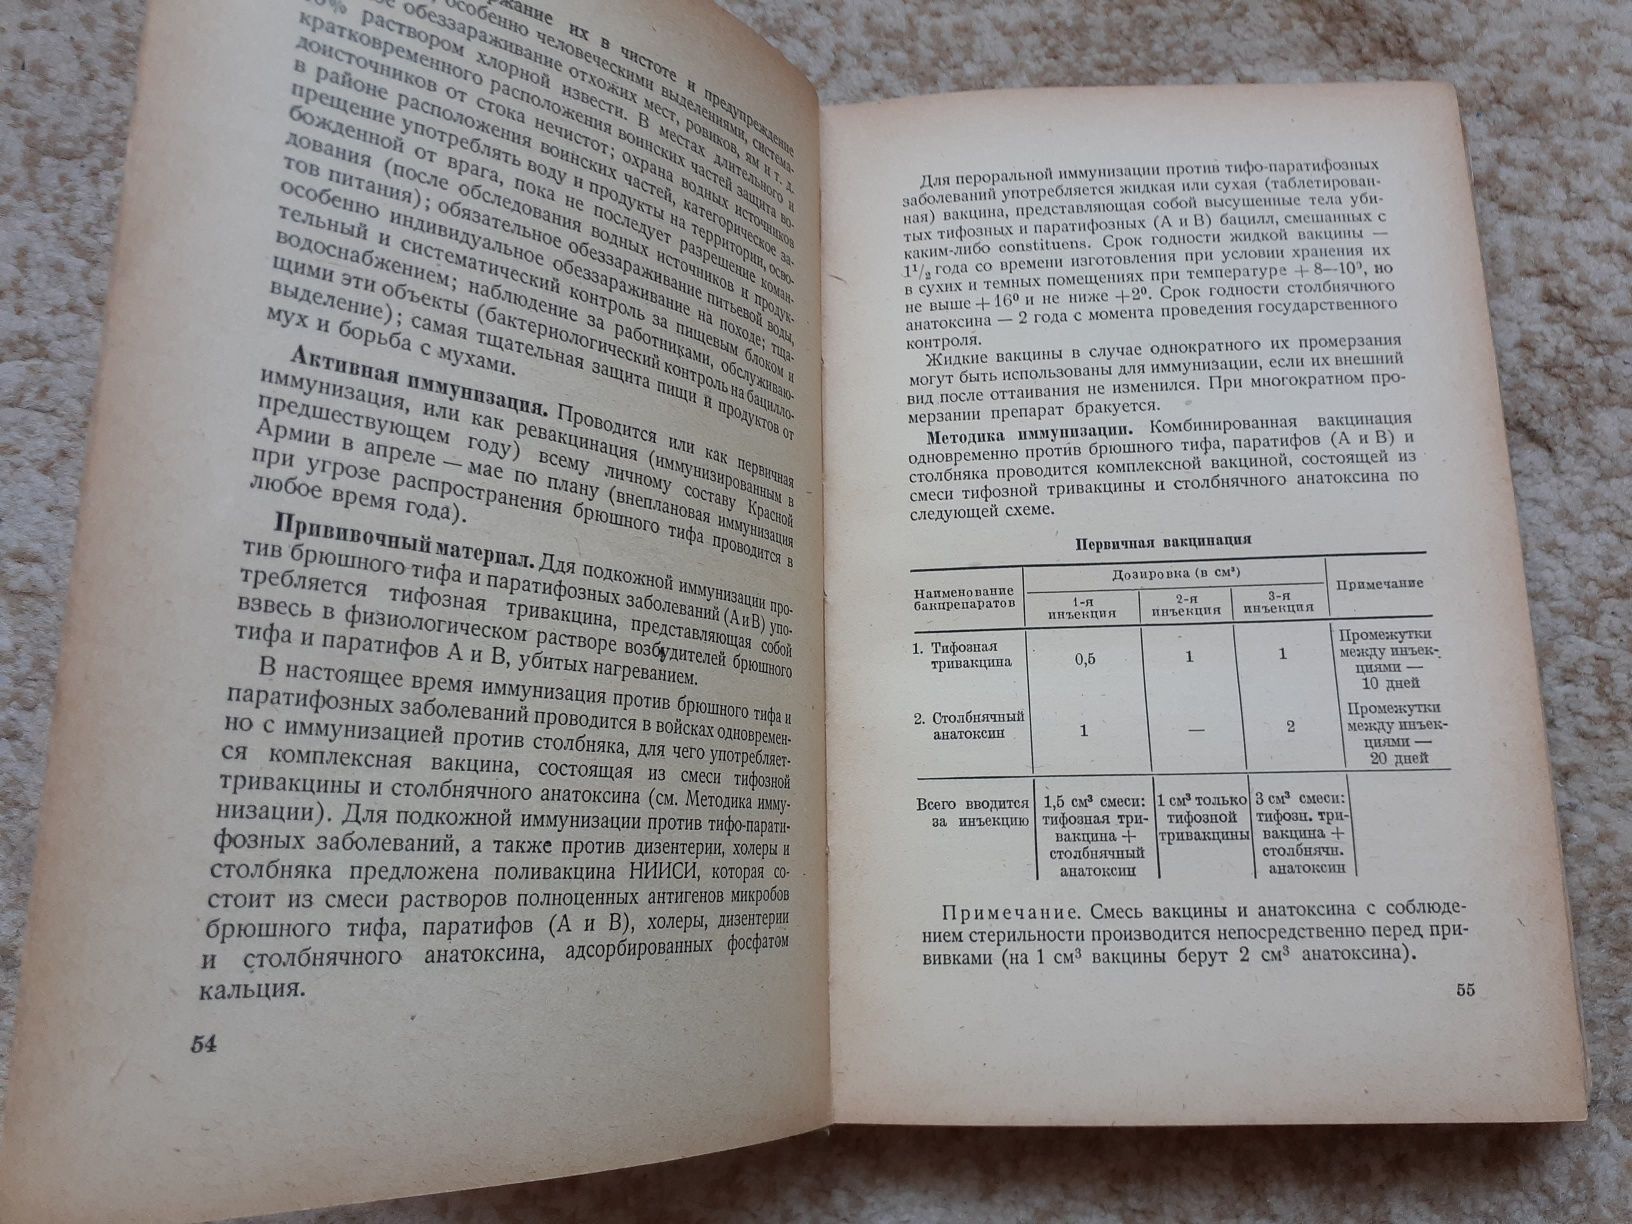 Раритет, справочник по инфекц болезням, 1944 год